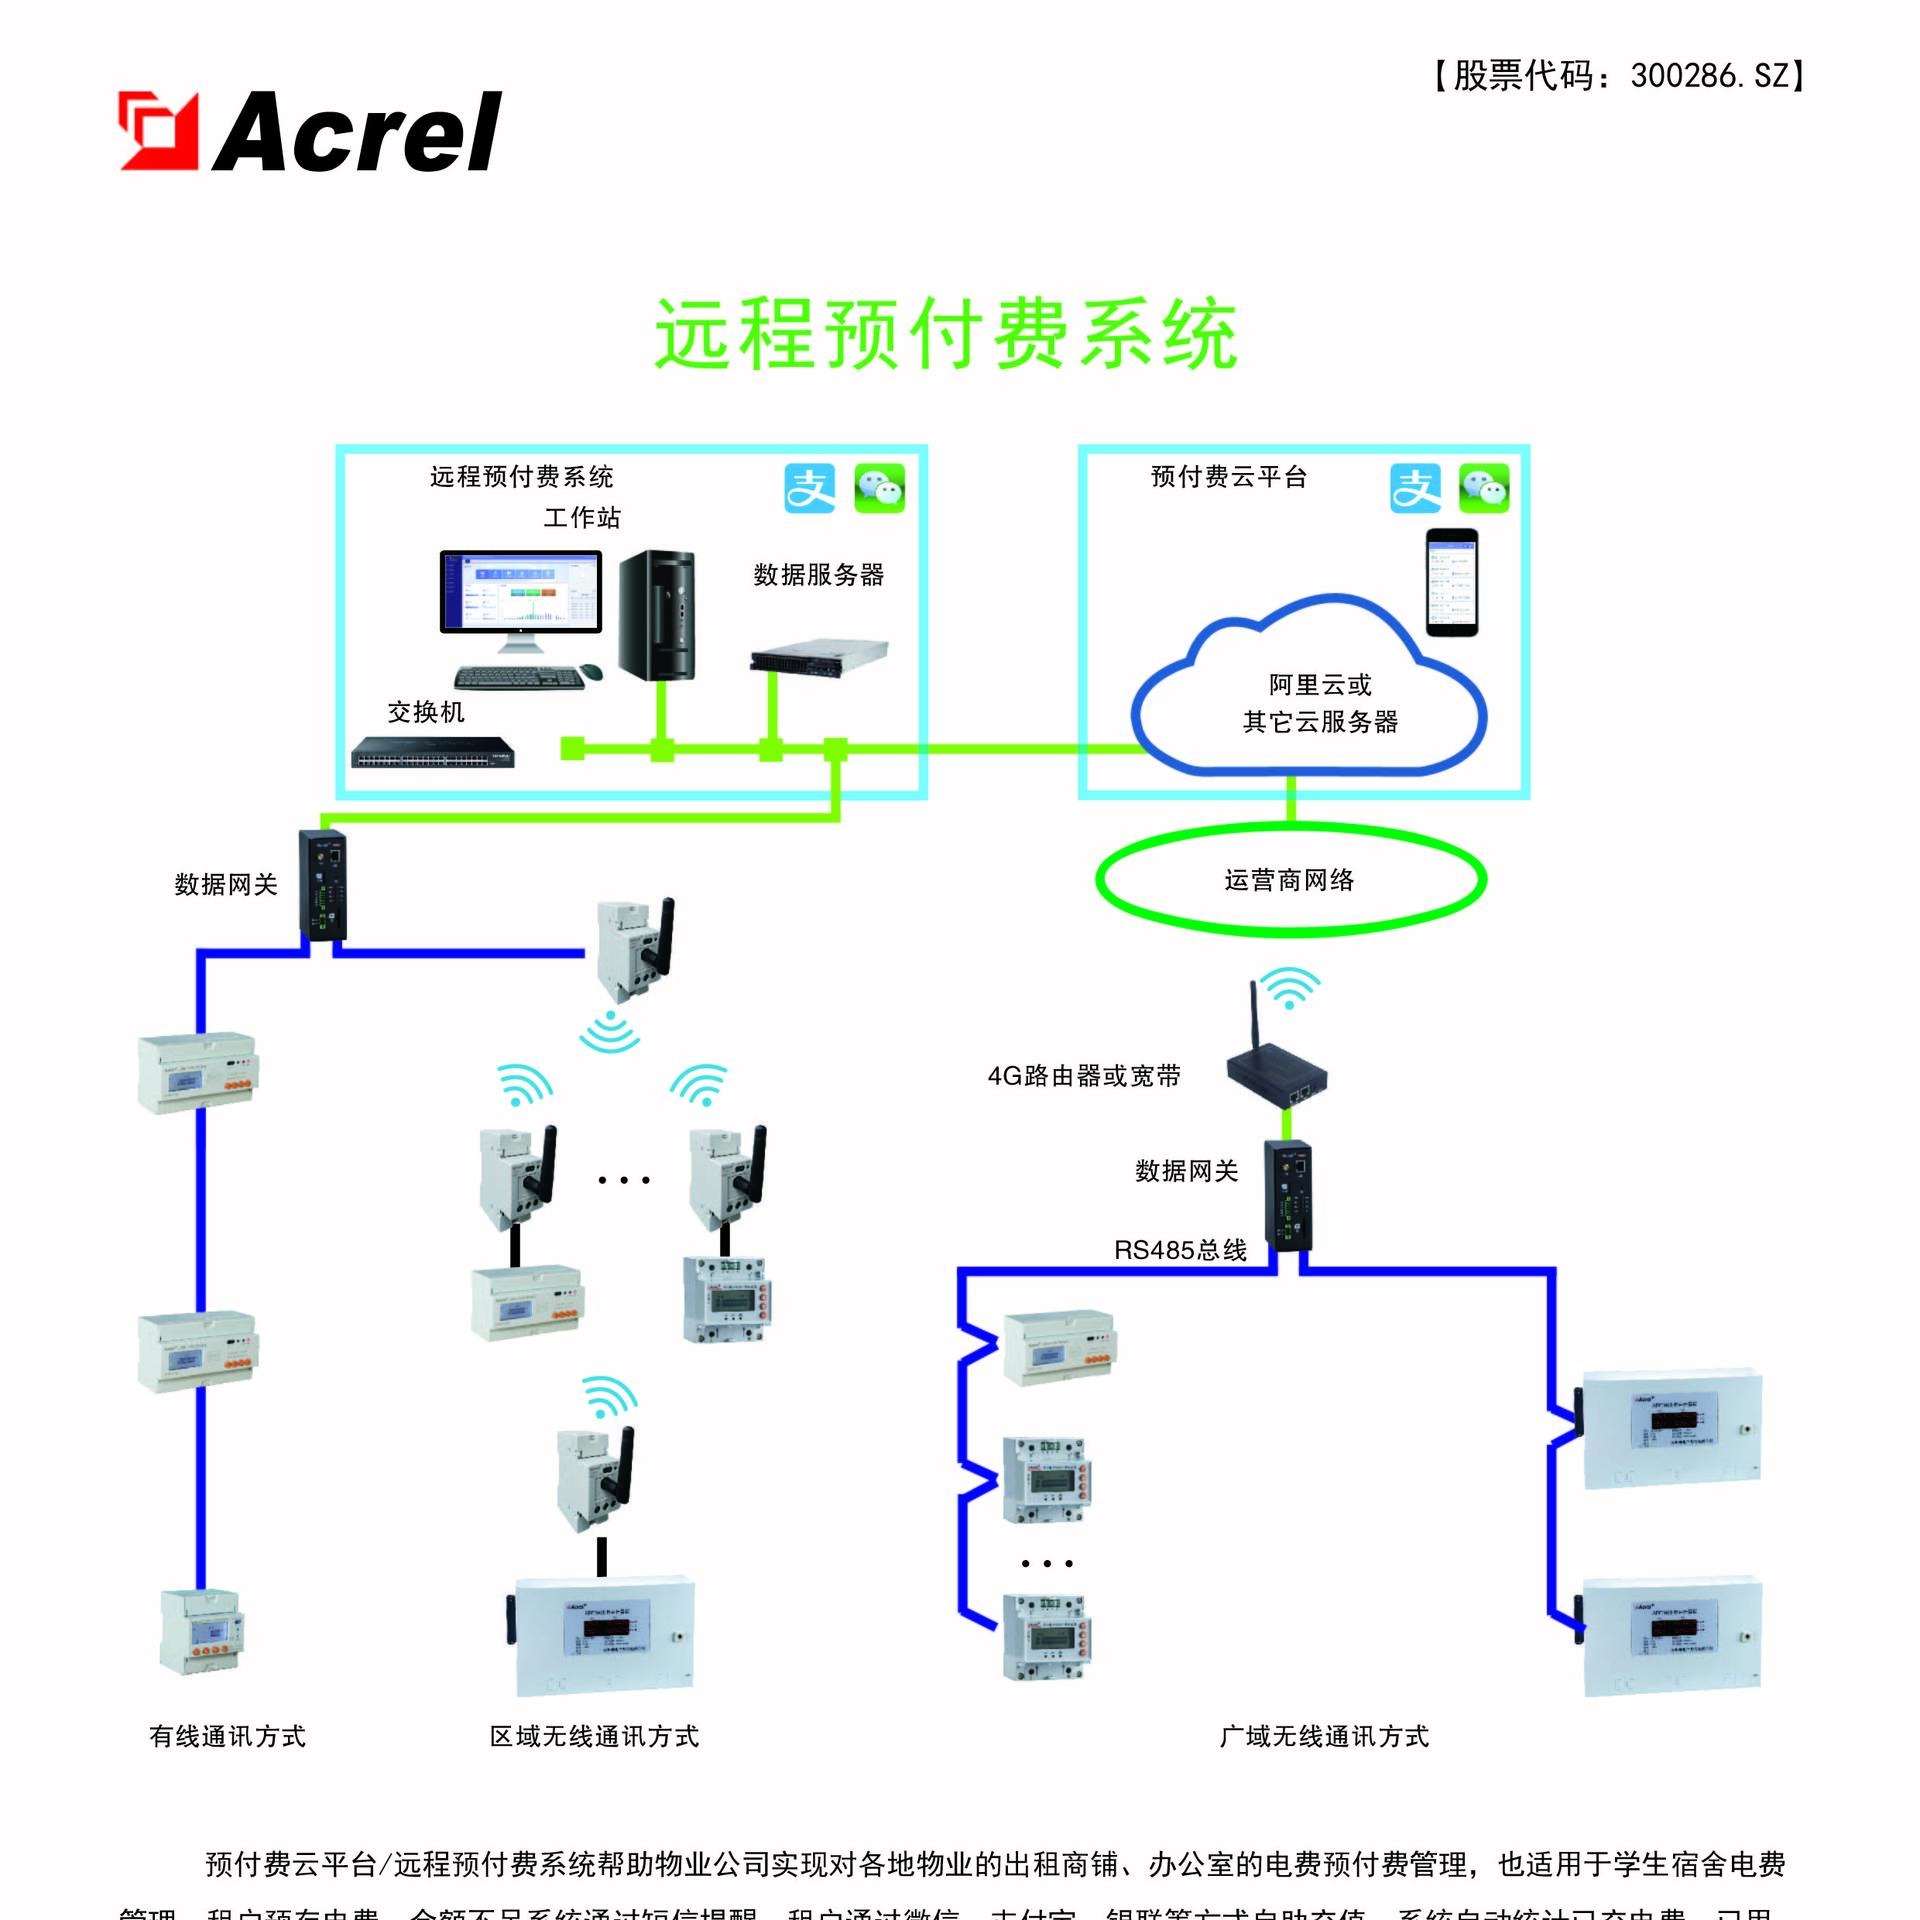 上海安科瑞acrel3100远程预付费电能管理系统 远程预付费售电系统 远程充值